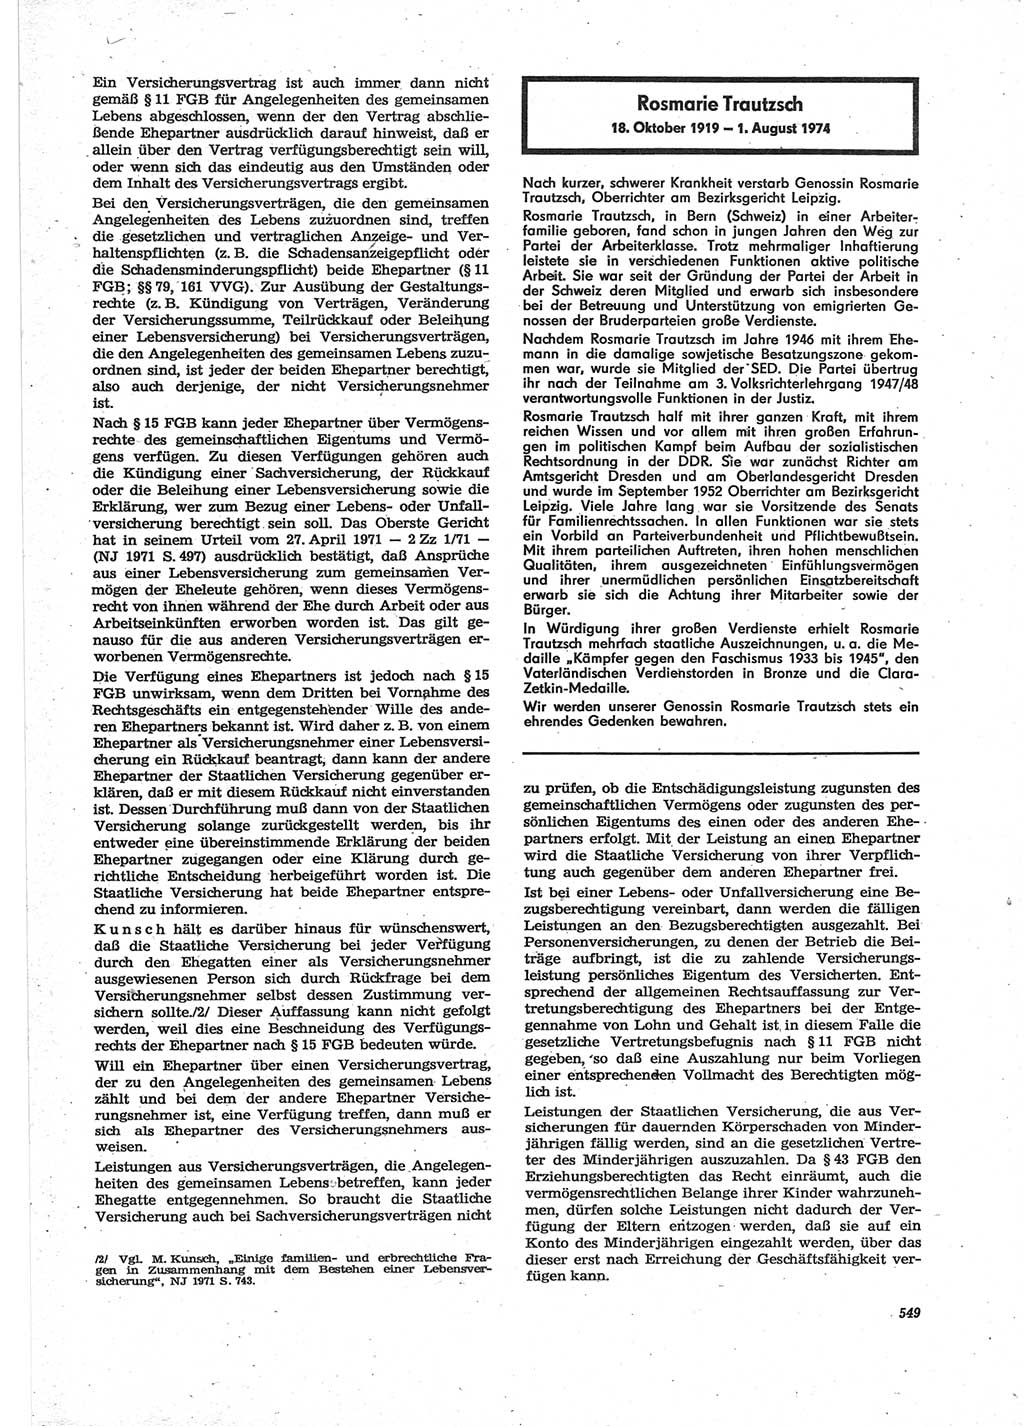 Neue Justiz (NJ), Zeitschrift für Recht und Rechtswissenschaft [Deutsche Demokratische Republik (DDR)], 28. Jahrgang 1974, Seite 549 (NJ DDR 1974, S. 549)